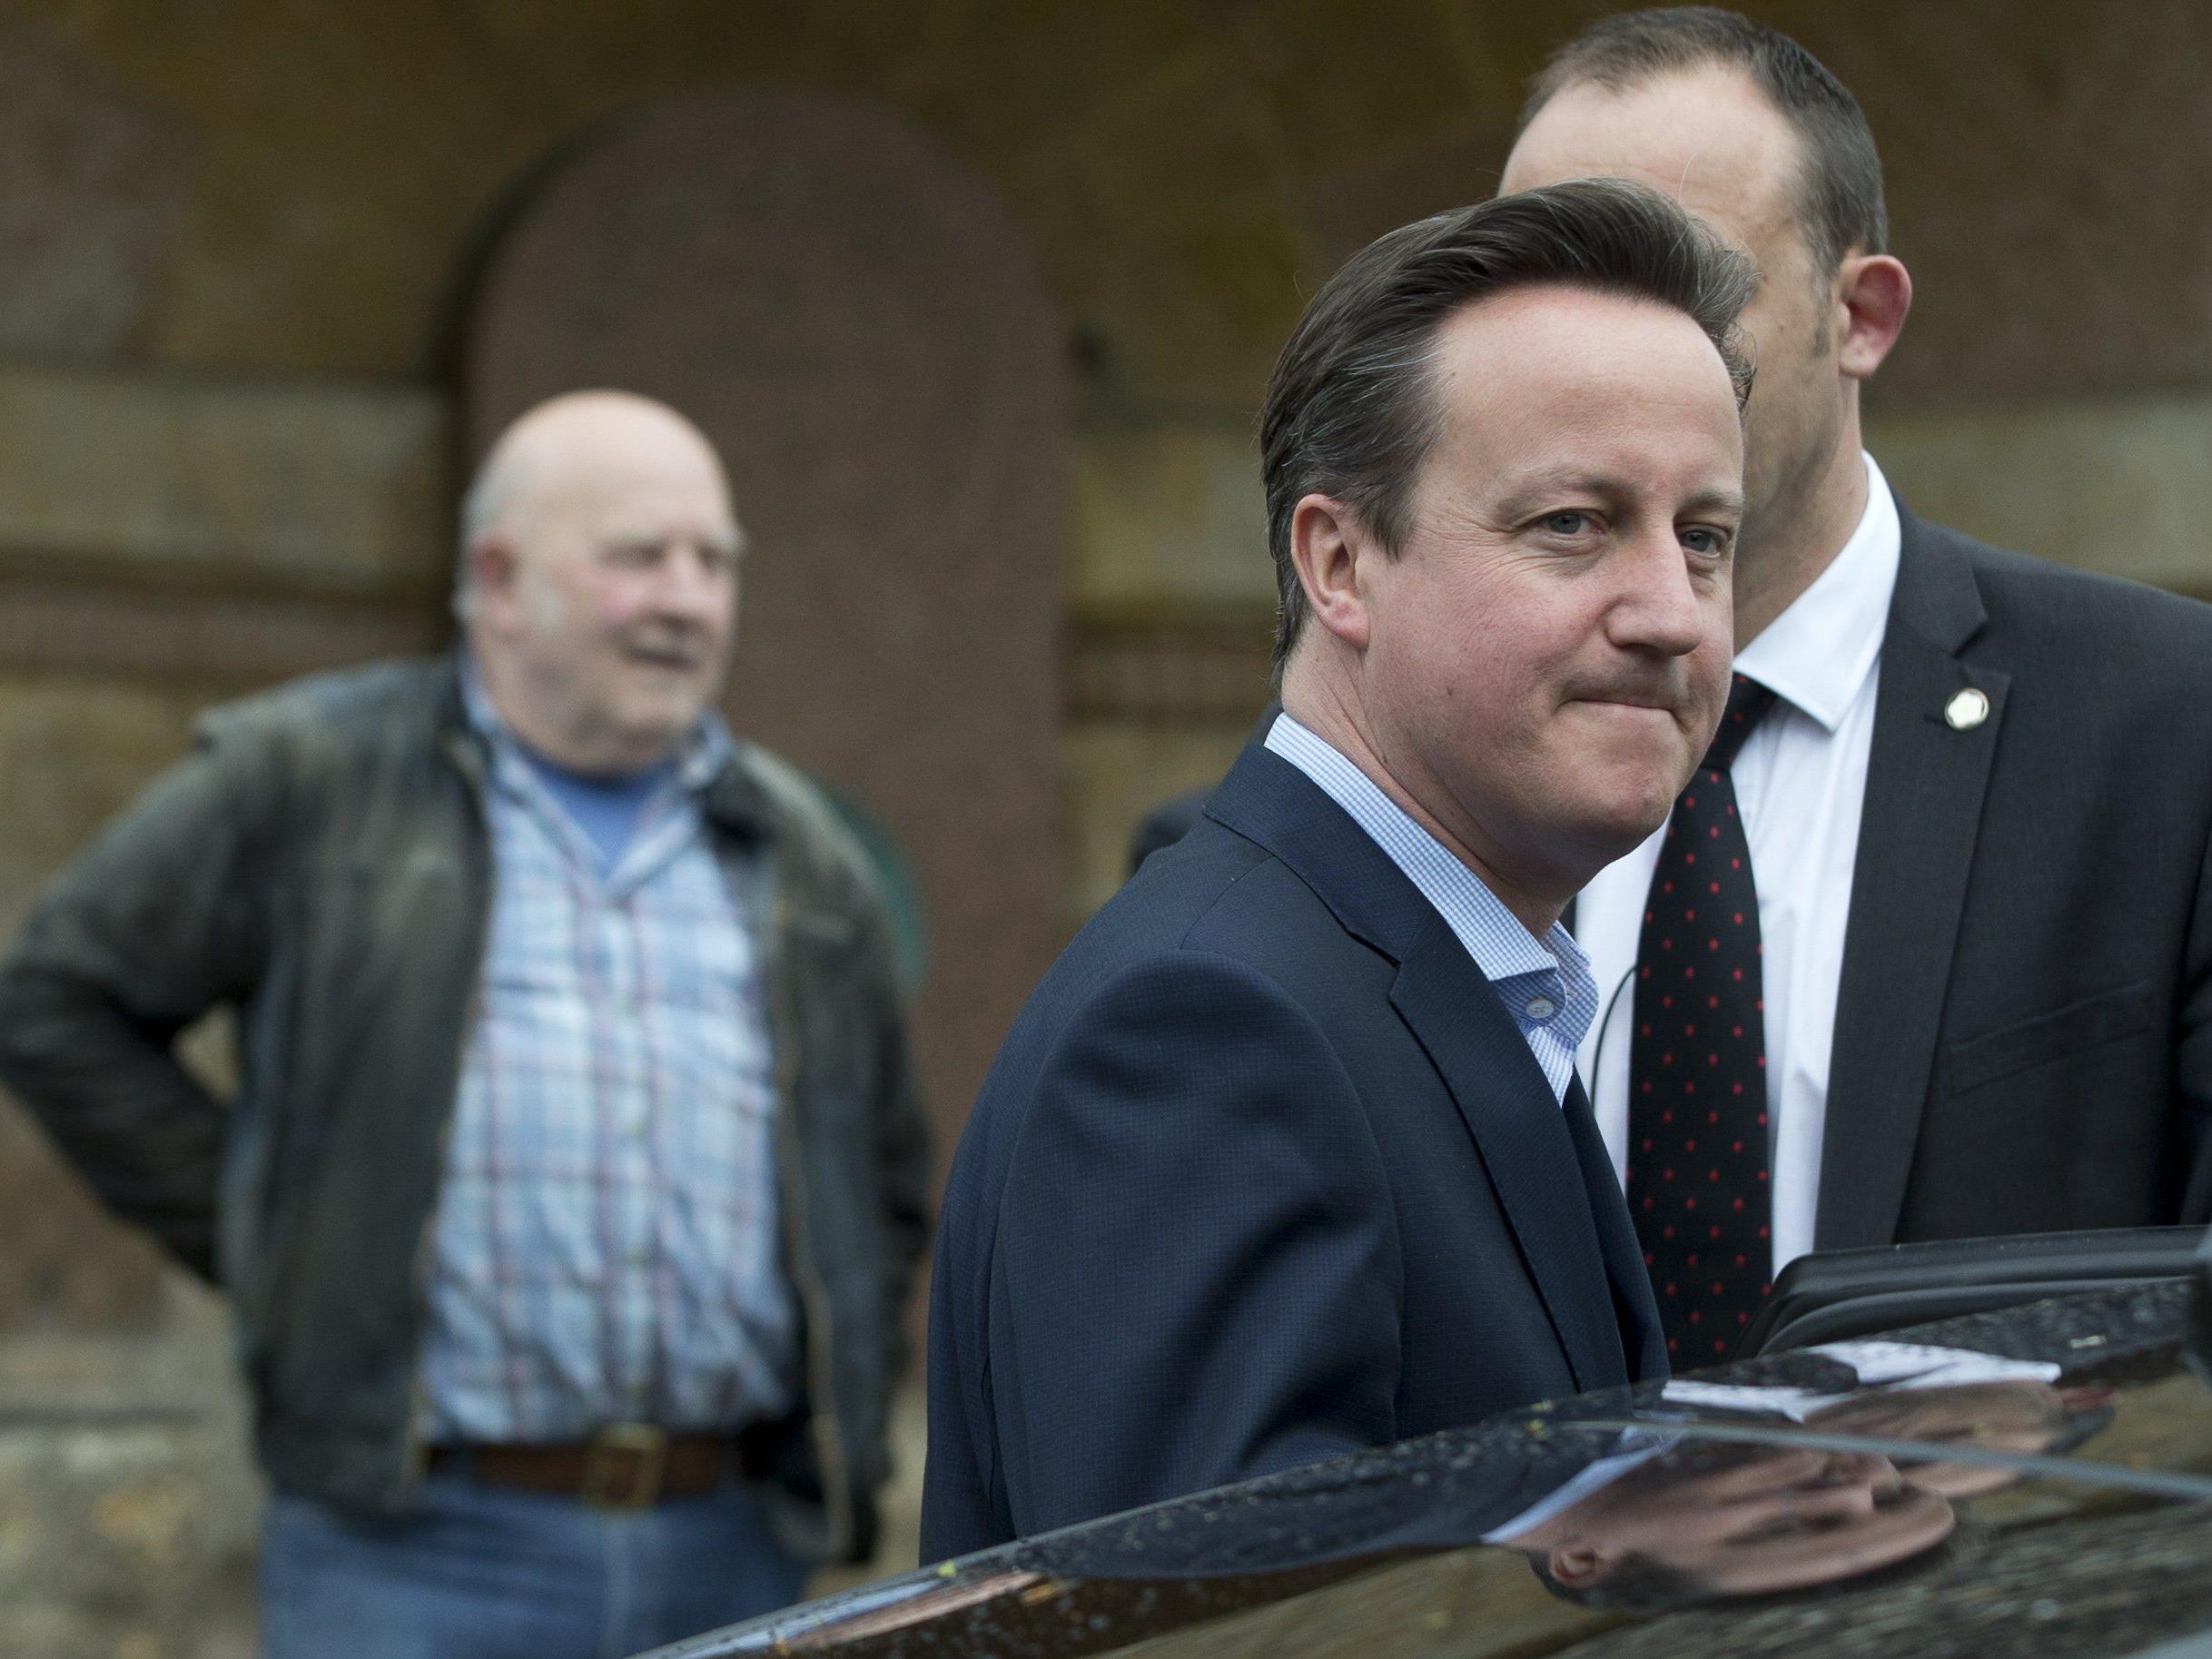 Camerons Konservative gewinnt die Parlamentswahlen in Großbritannien. An der Absoluten dürfte er aber knapp vorbeischrammen.